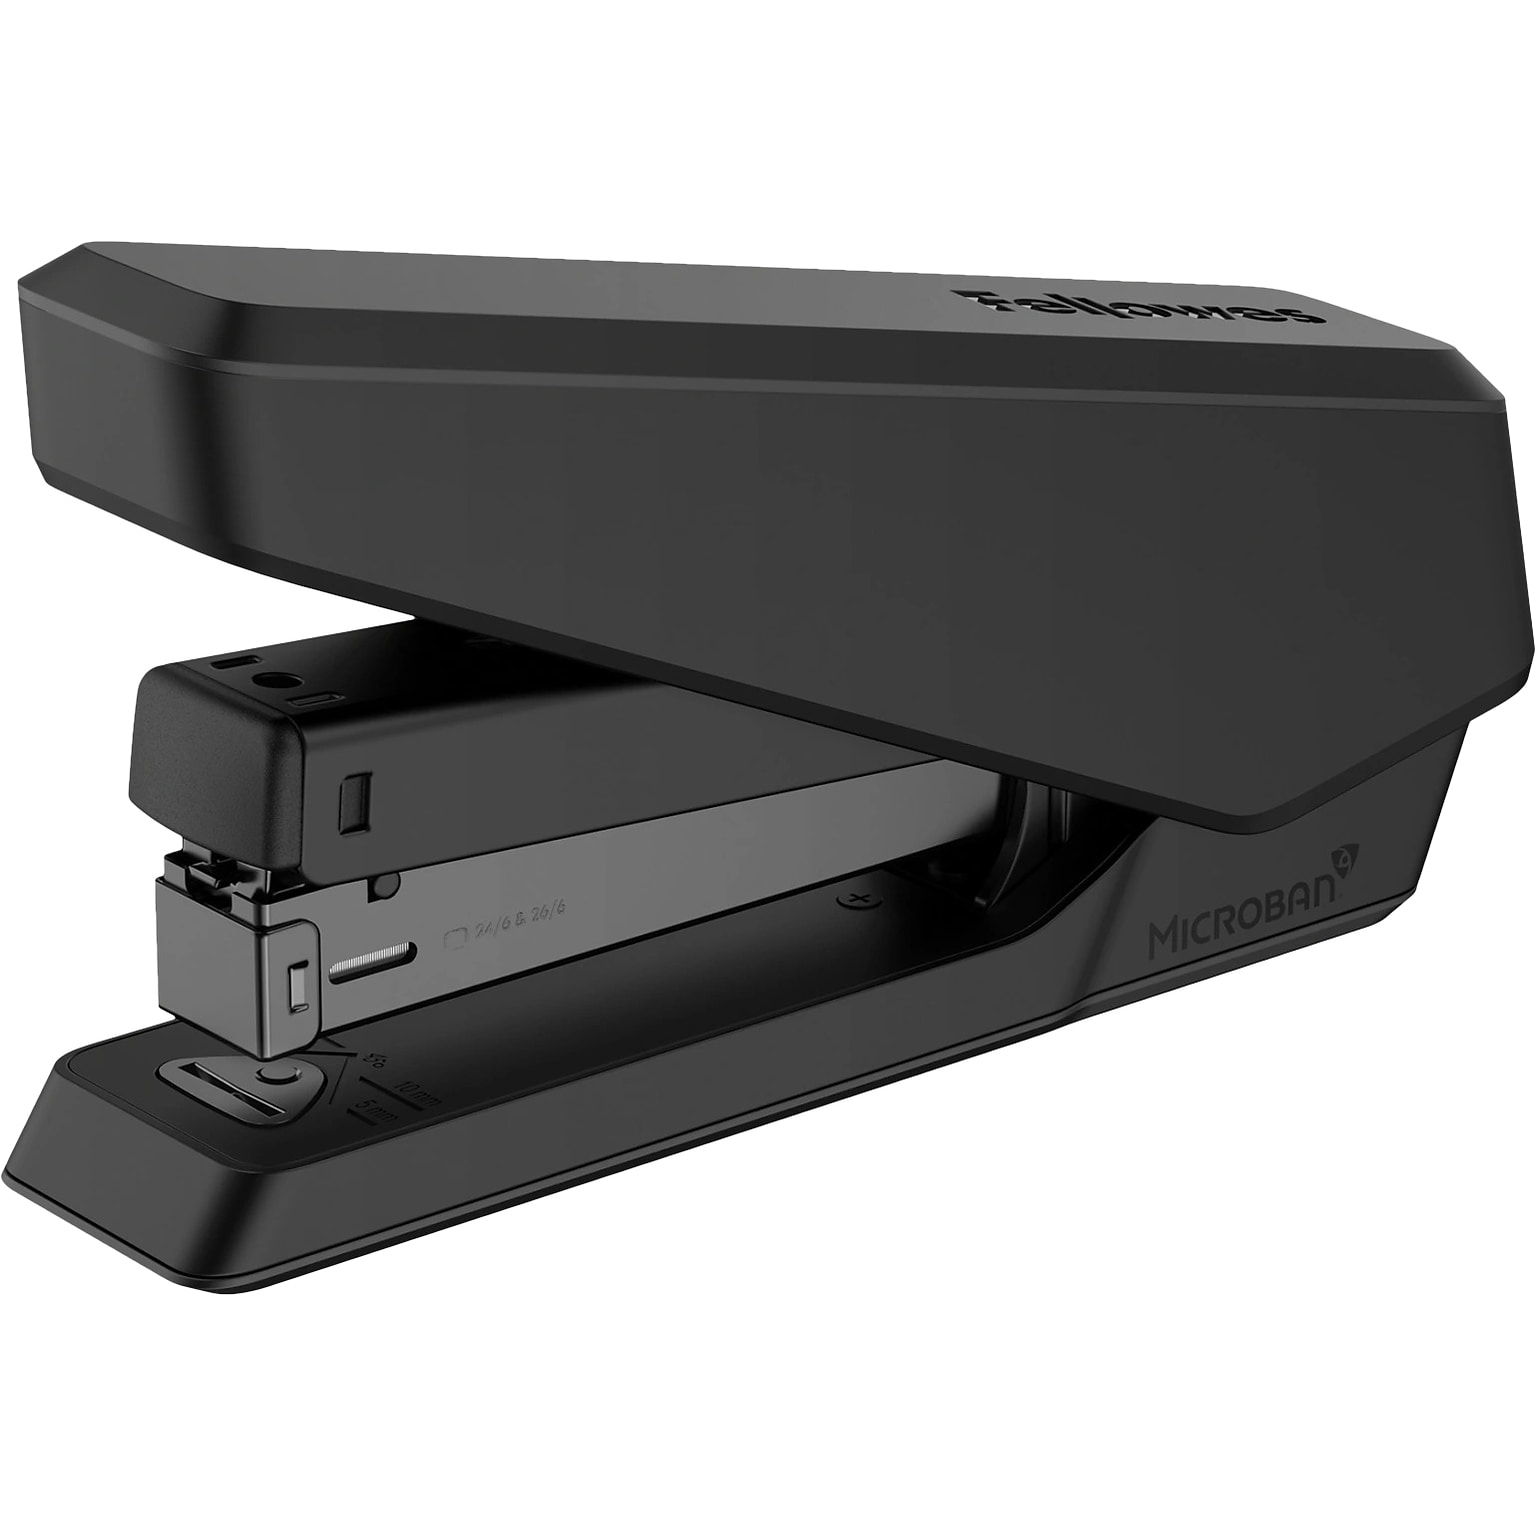 Fellowes LX850 Desktop Stapler, 25-Sheet Capacity, Black (5010701)